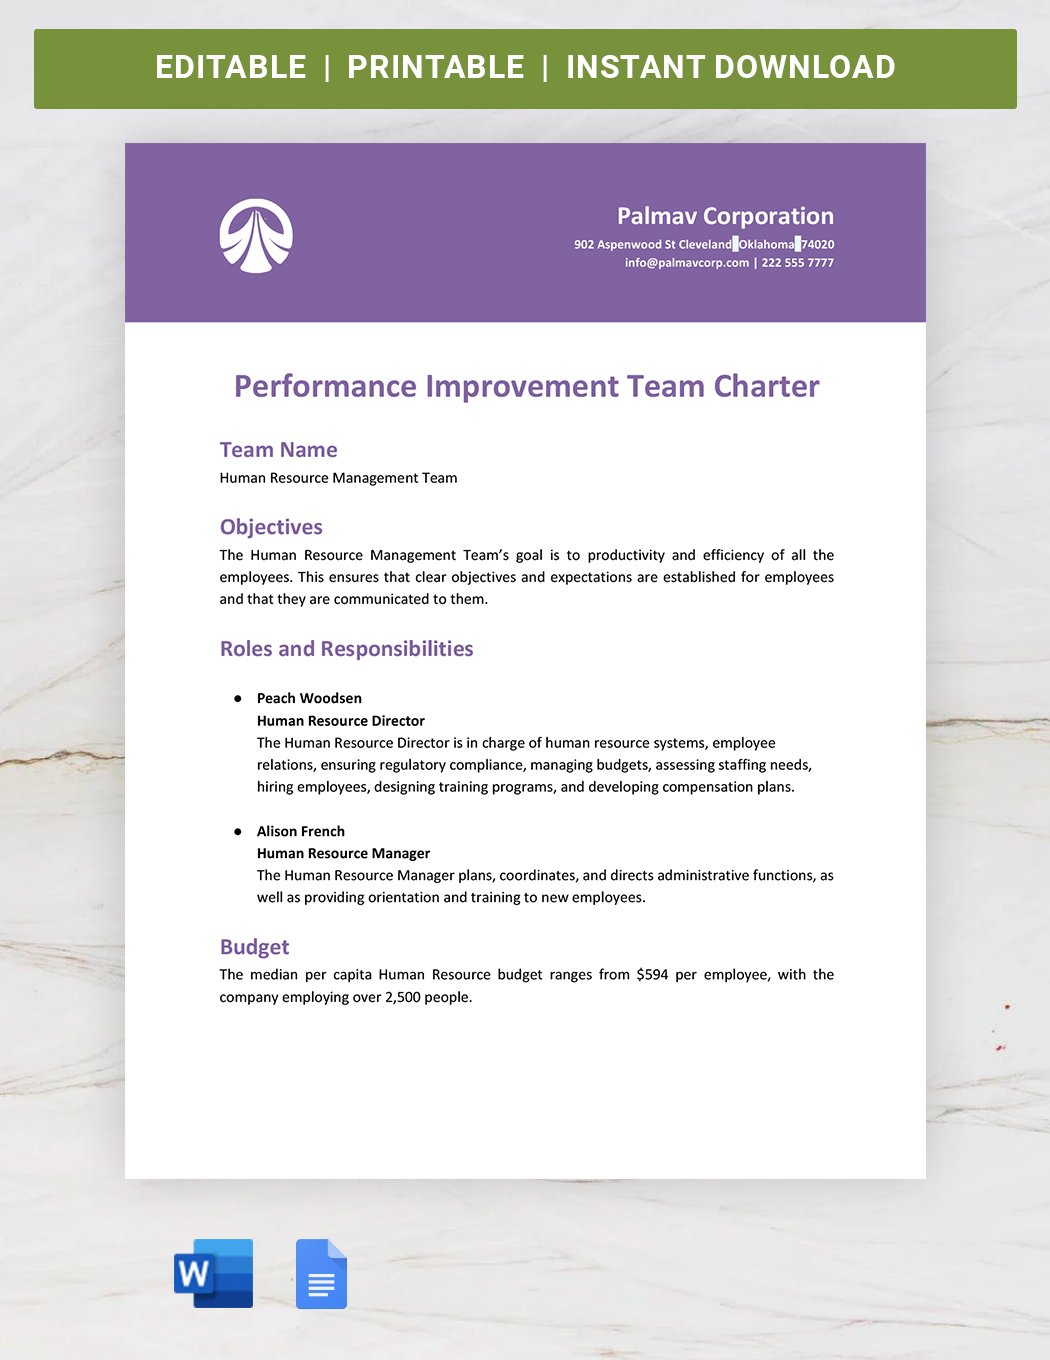 Performance Improvement Team Charter Template